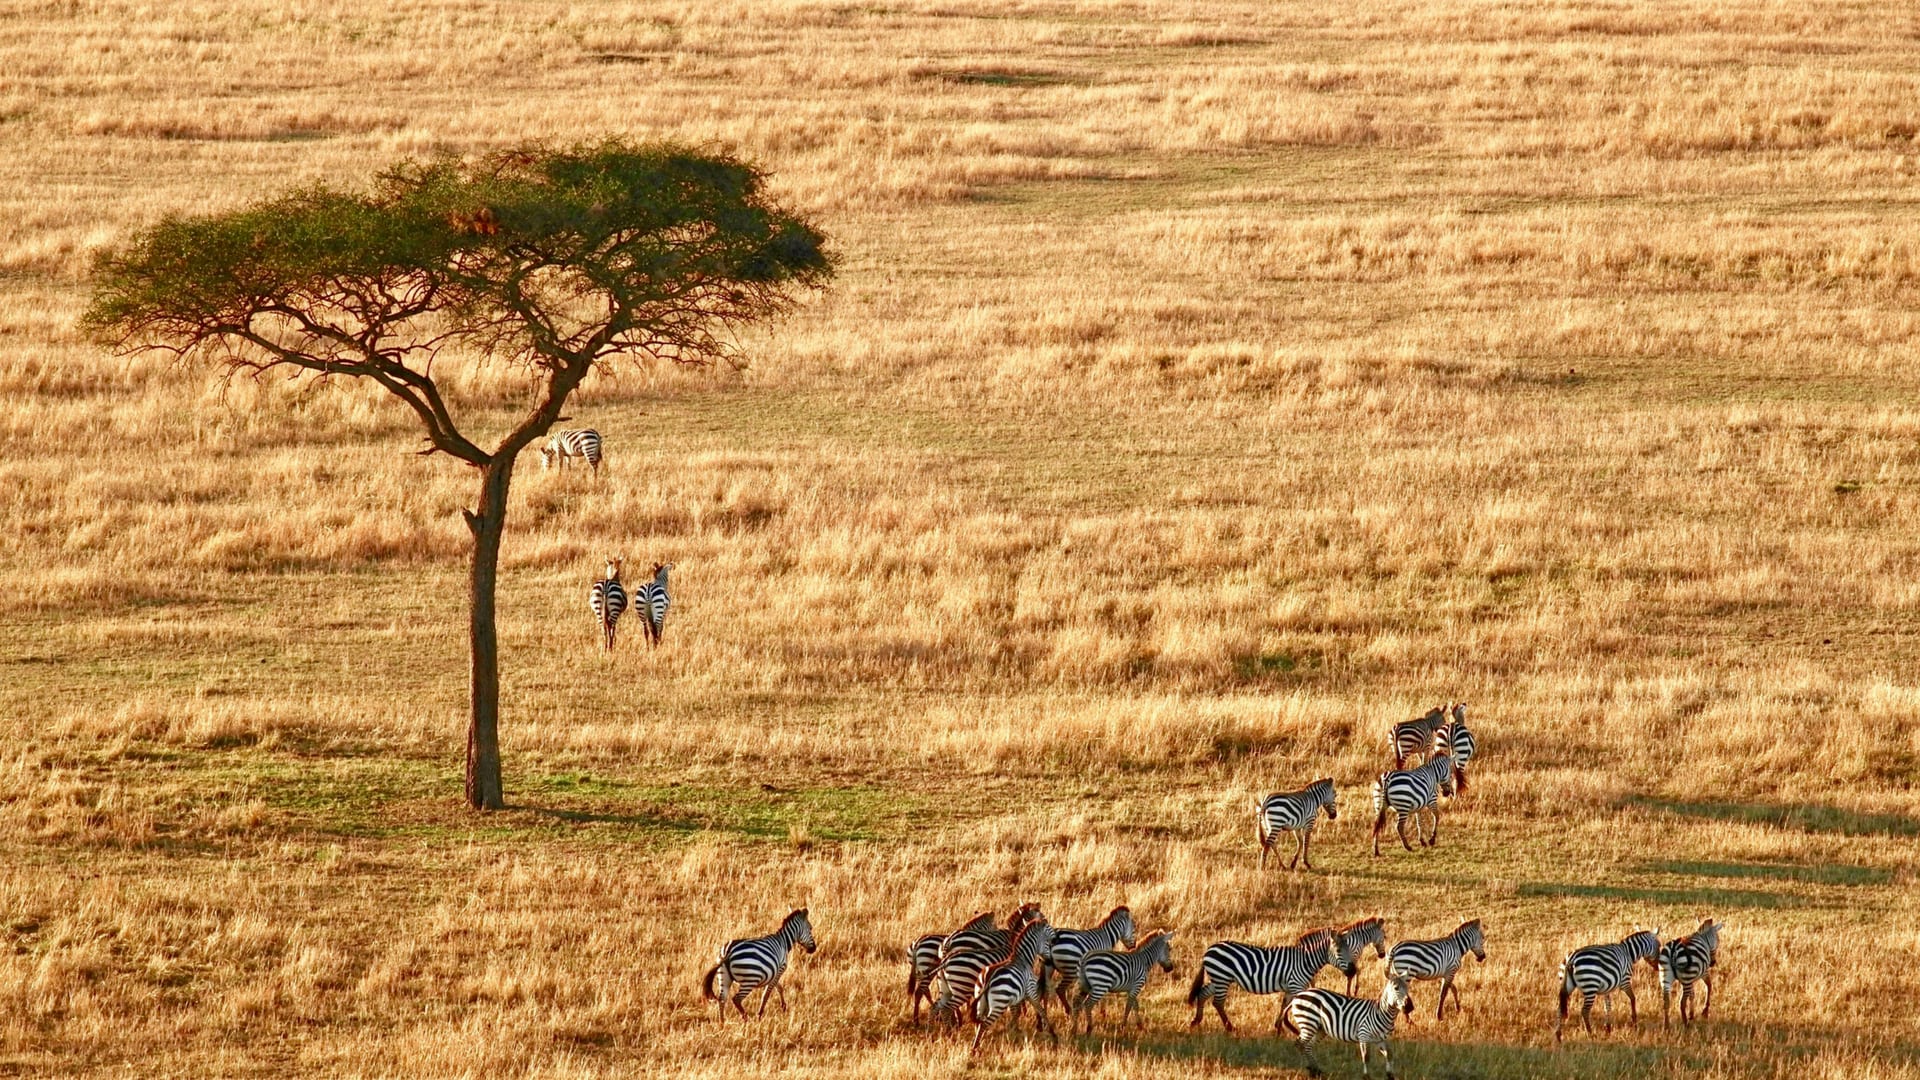 Zebras on an African plain